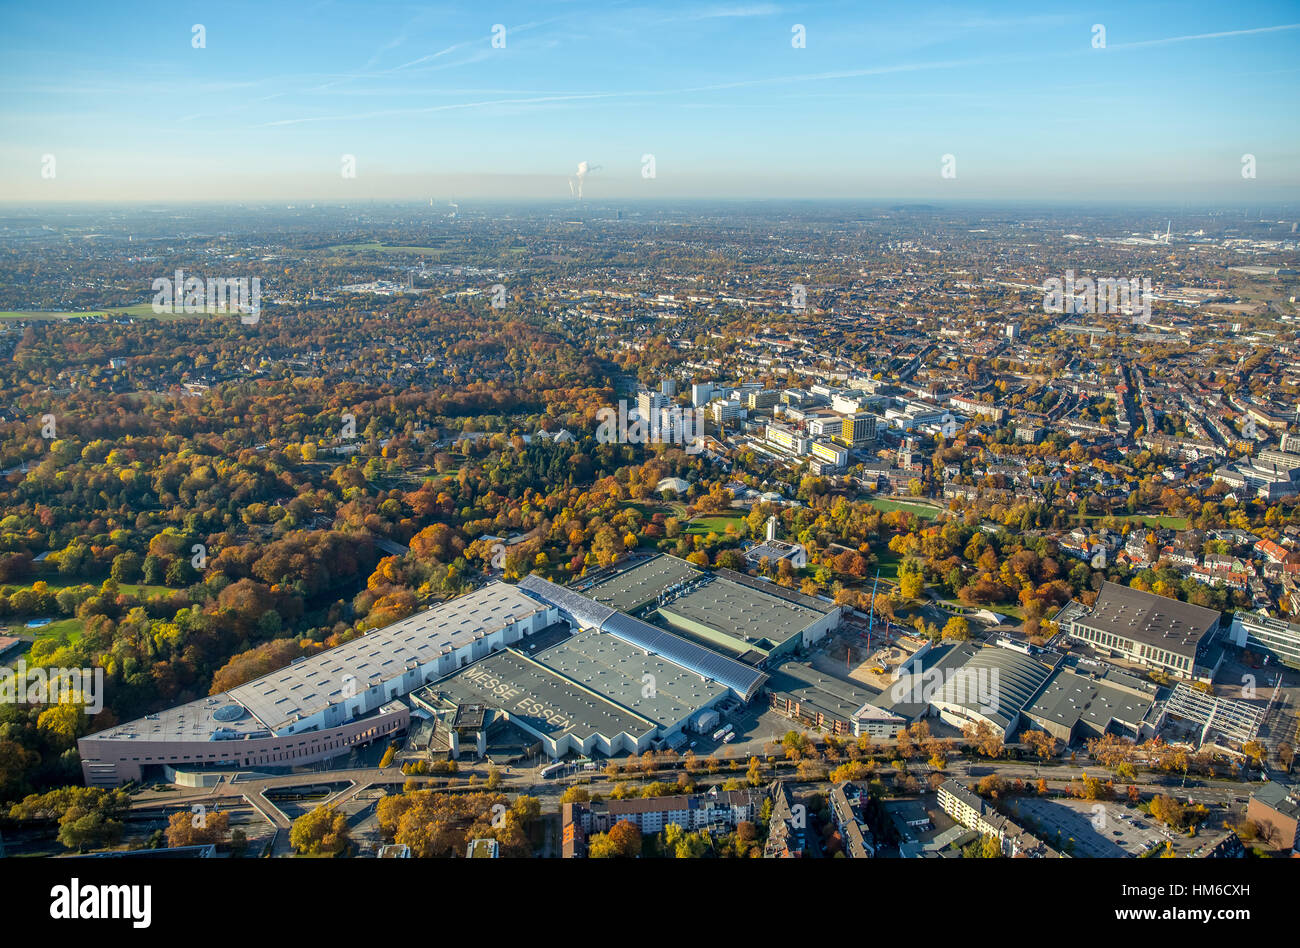 Vista aérea de la Messe Essen en expansión, Essen Grugapark fairgrounds, districto de Ruhr, Renania del Norte-Westfalia, Alemania Foto de stock